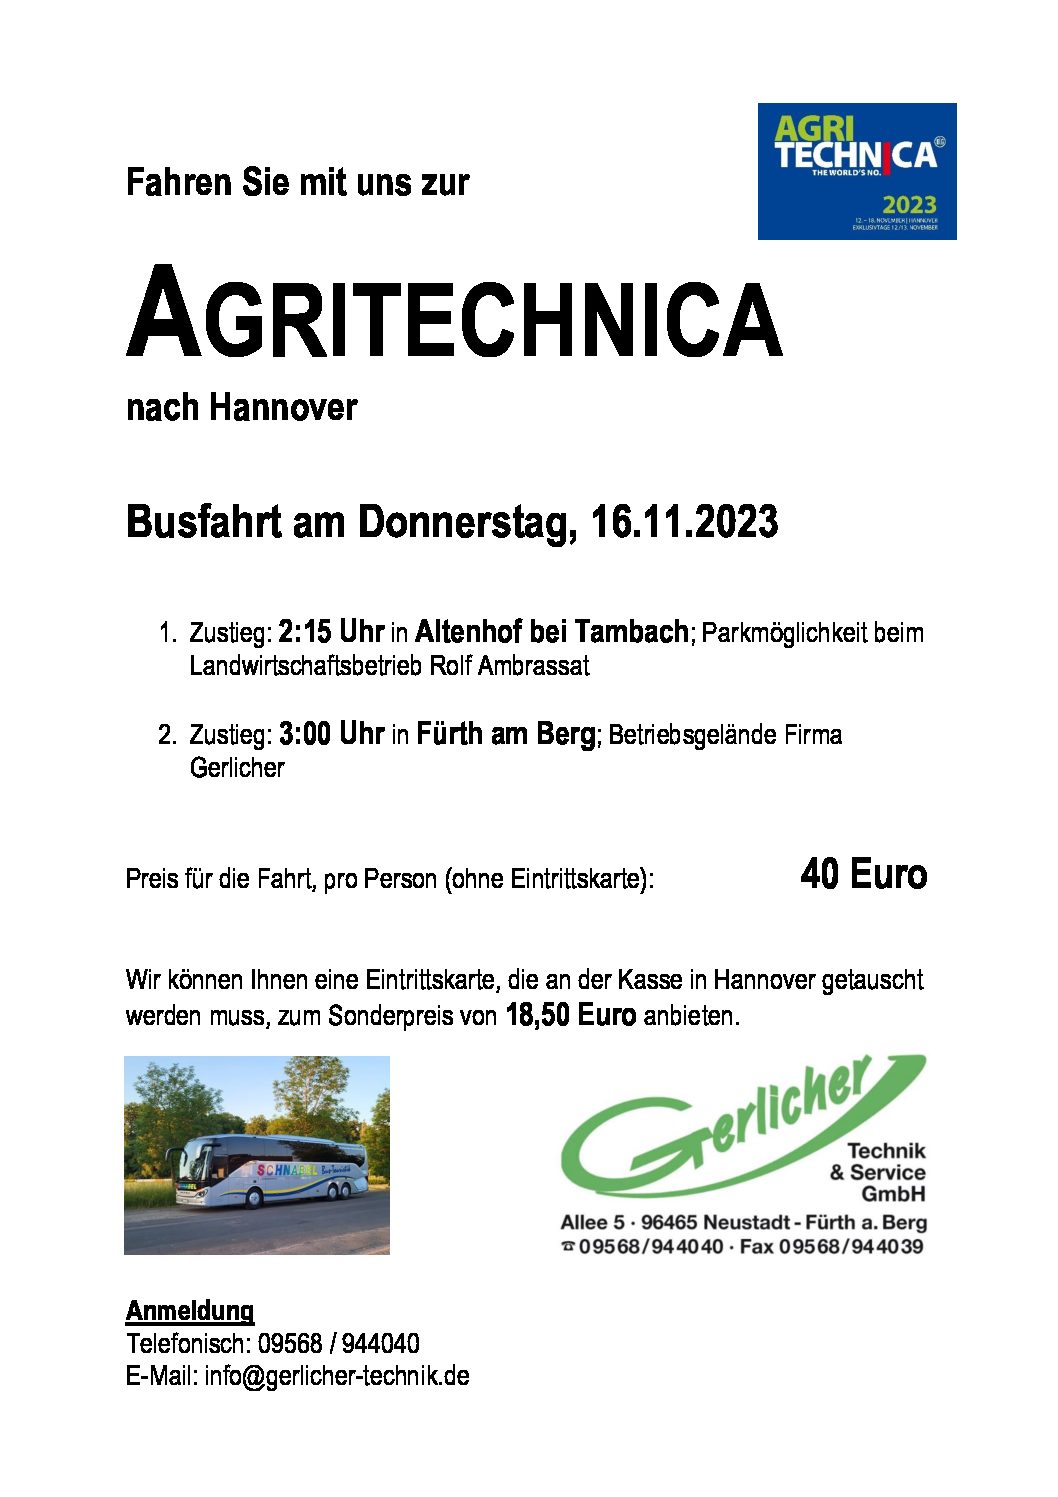 Fahren Sie mit uns zur Agritechnica nach Hannover!